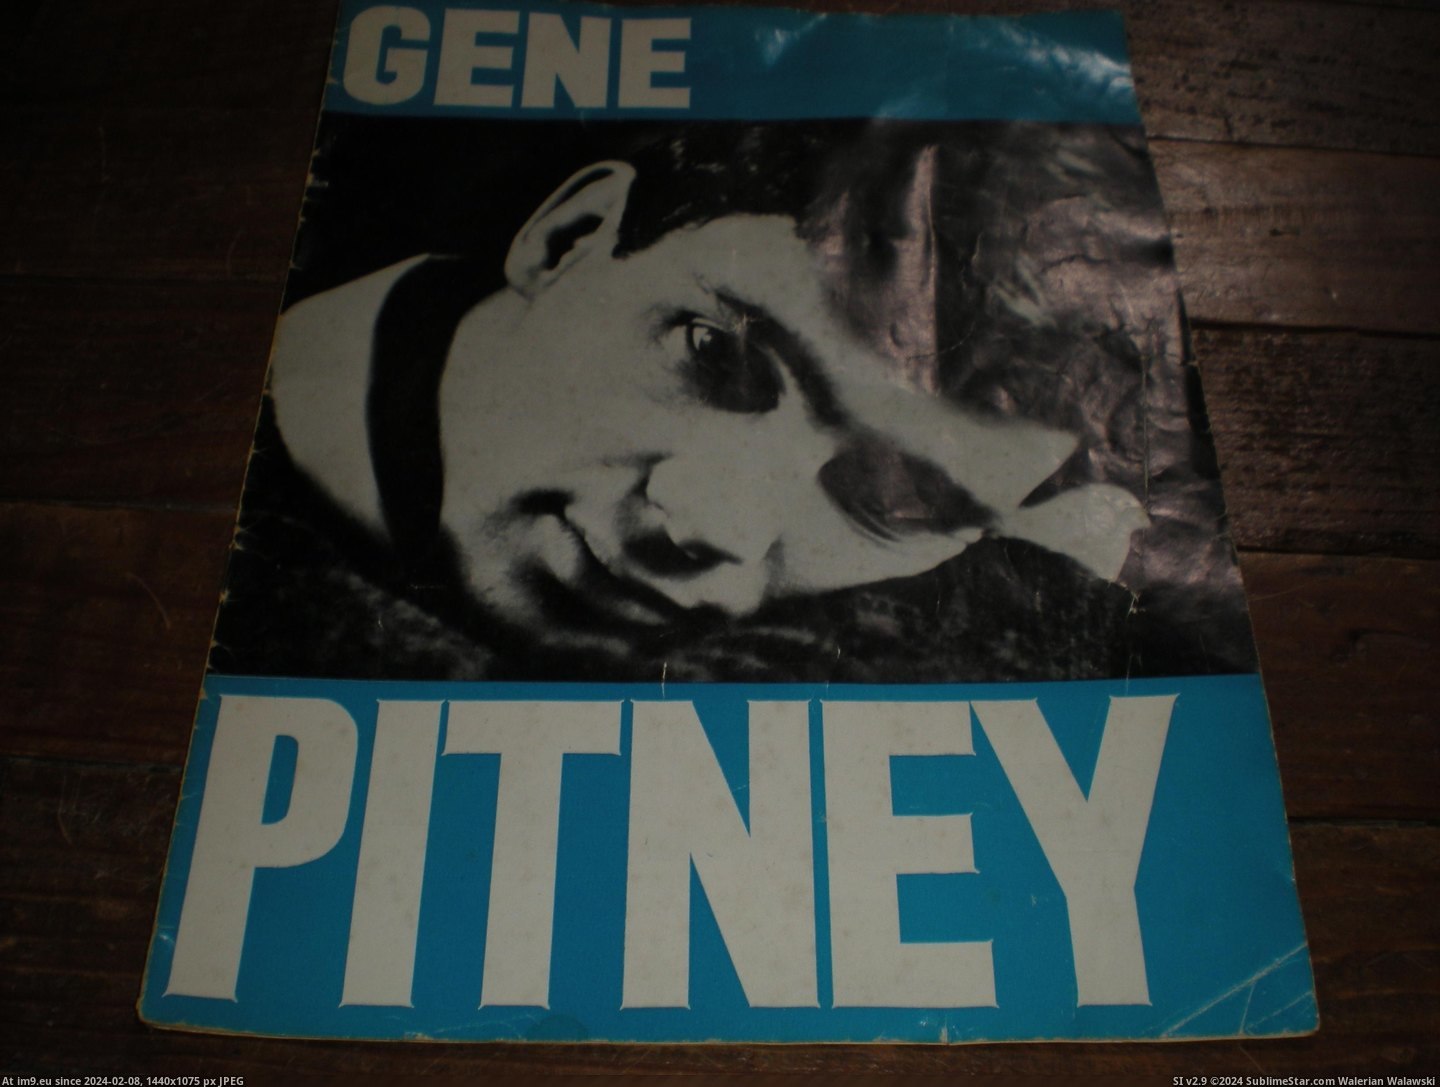 #Gene #Pitney #Prog Gene Pitney prog 1 Pic. (Image of album new 1))